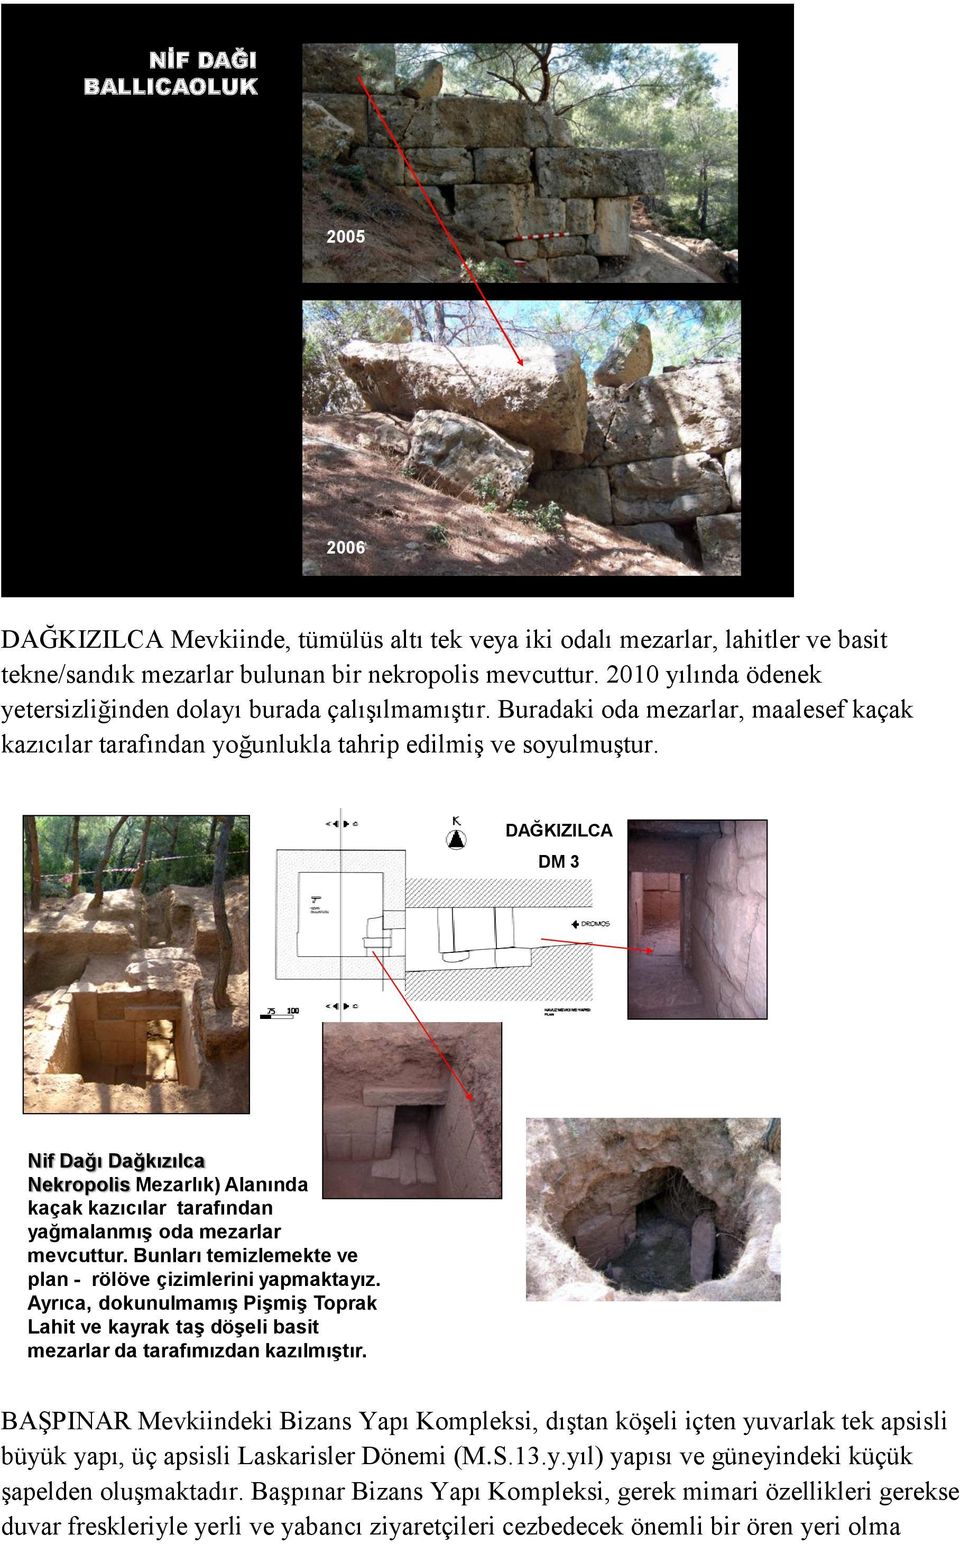 DAĞKIZILCA DM 3 Nif Dağı Dağkızılca Nekropolis Mezarlık) Alanında kaçak kazıcılar tarafından yağmalanmıģ oda mezarlar mevcuttur. Bunları temizlemekte ve plan - rölöve çizimlerini yapmaktayız.